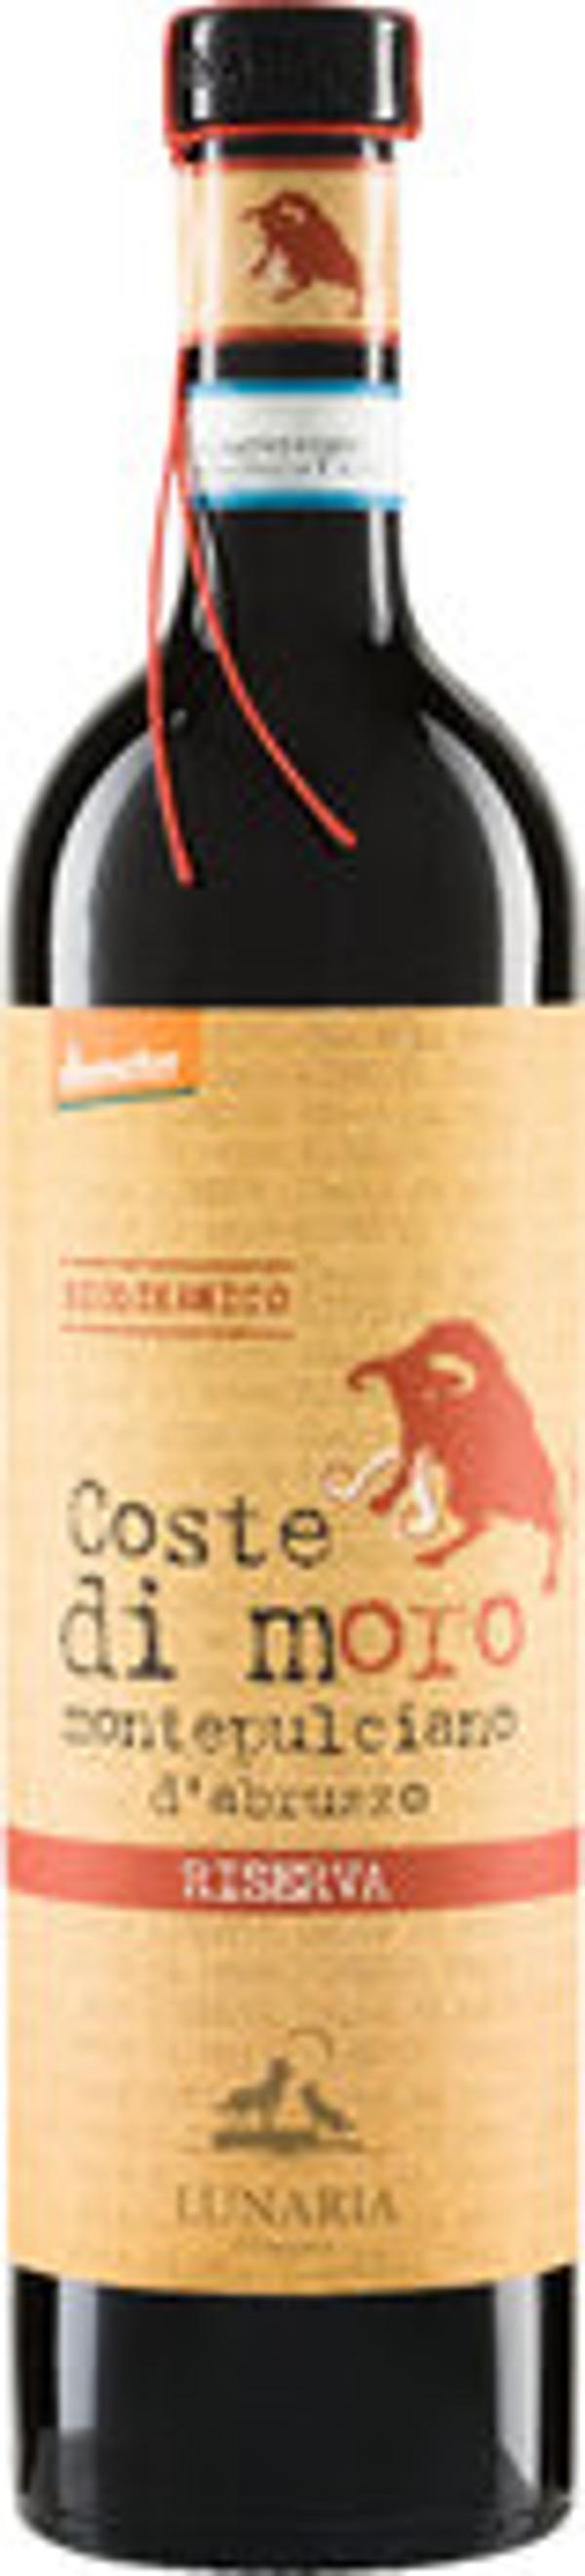 Produktfoto zu Coste di Moro Riserva rot 0,75l